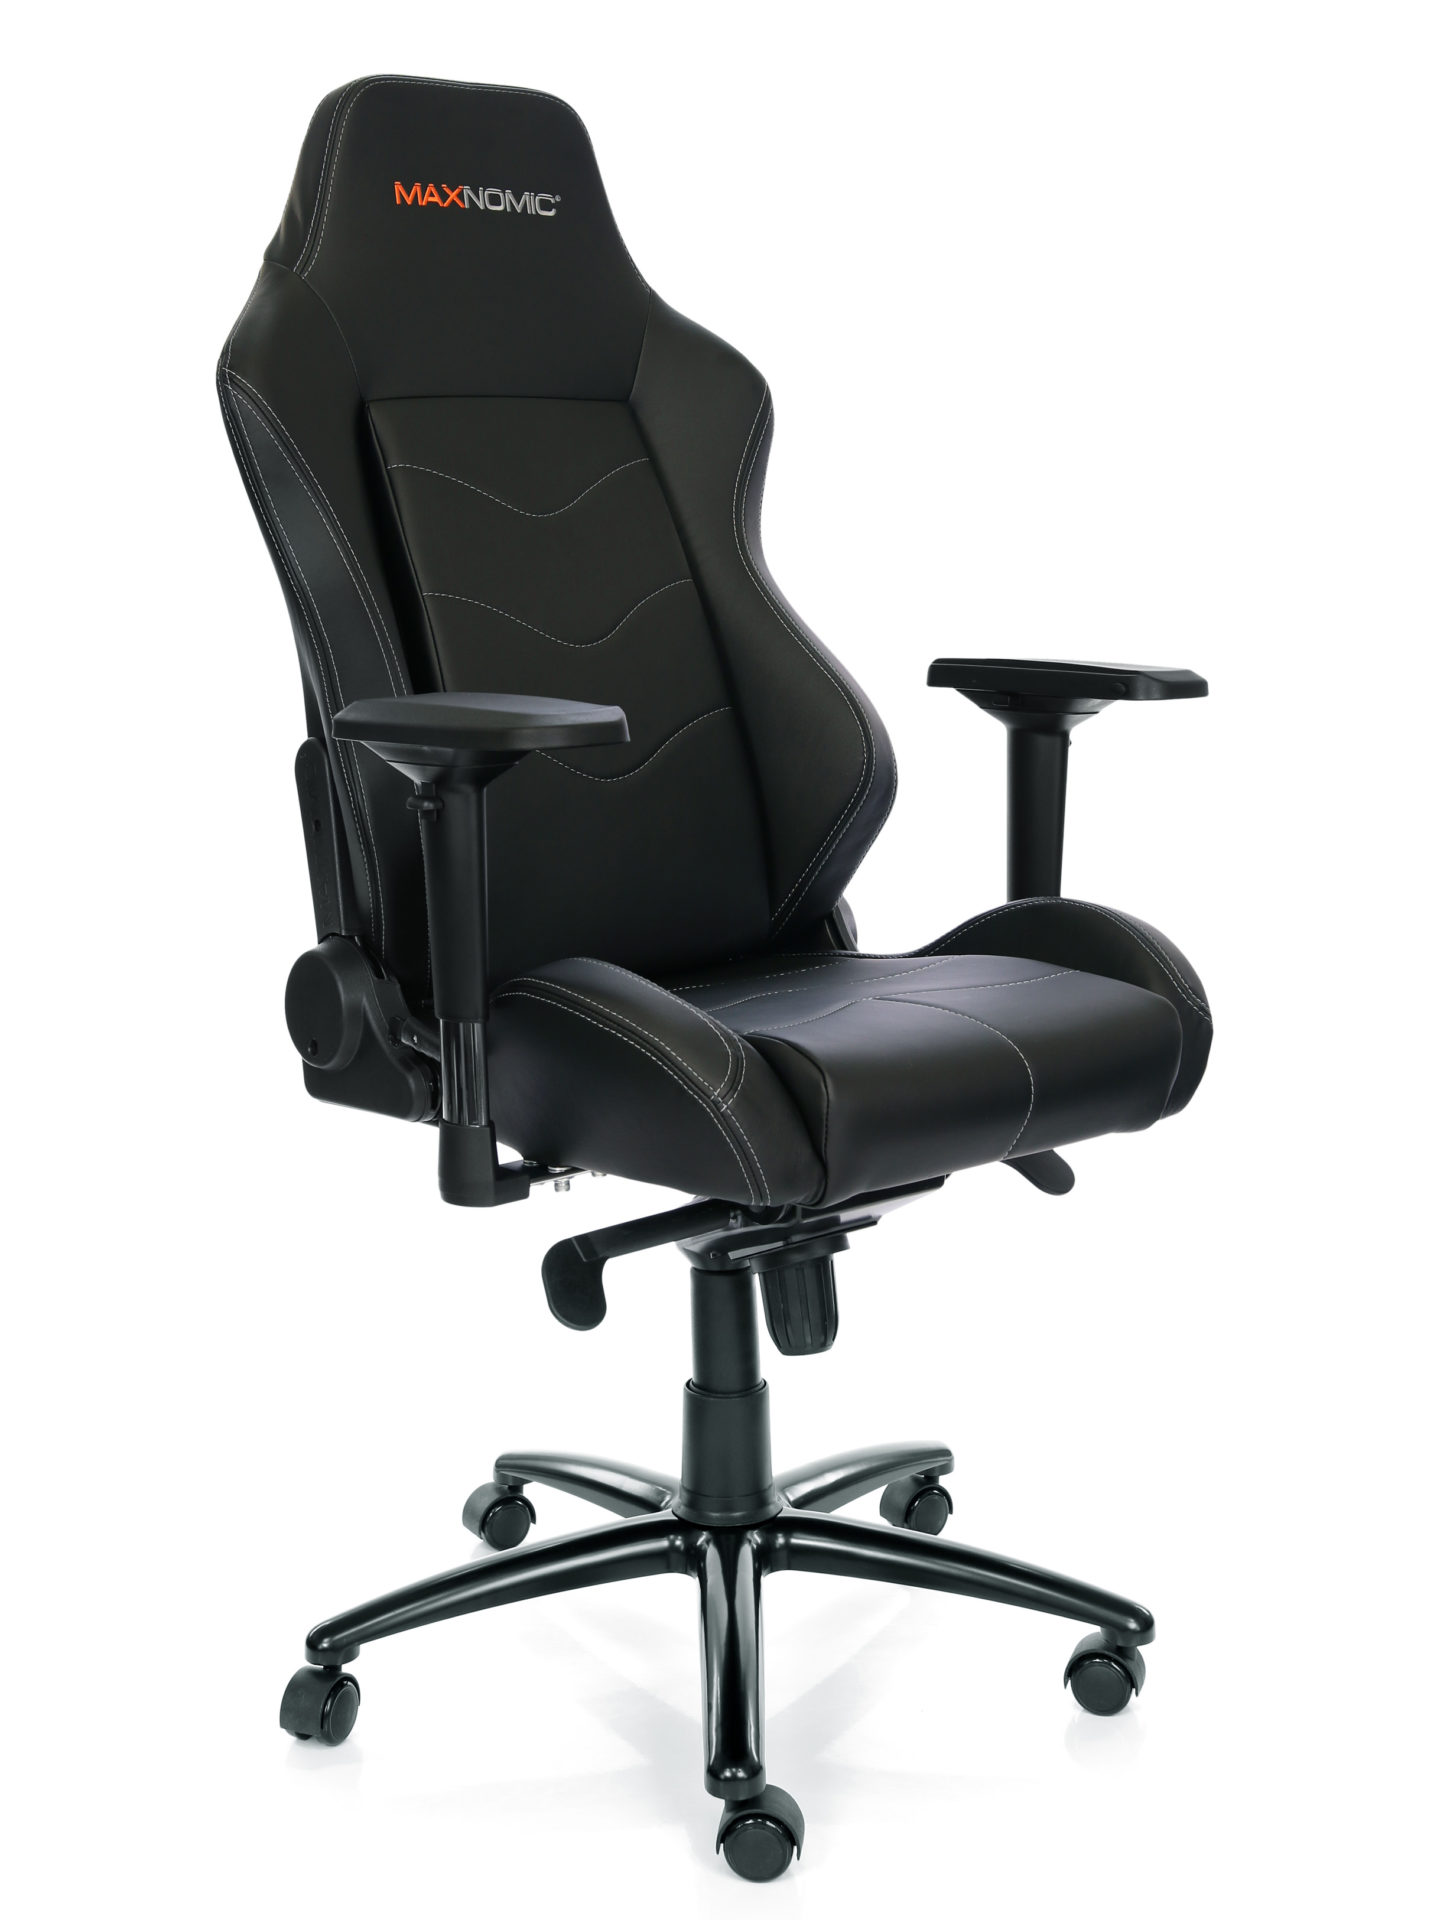 Gaming-Stuhl Modell Dominator Schwarz von Maxnomic® - ein schwarzer Bürostuhl mit Kunstlederbezug, 4D-Armlehen, Höhenverstellung und Wippmechanik mit 5 Feststellpositionen.